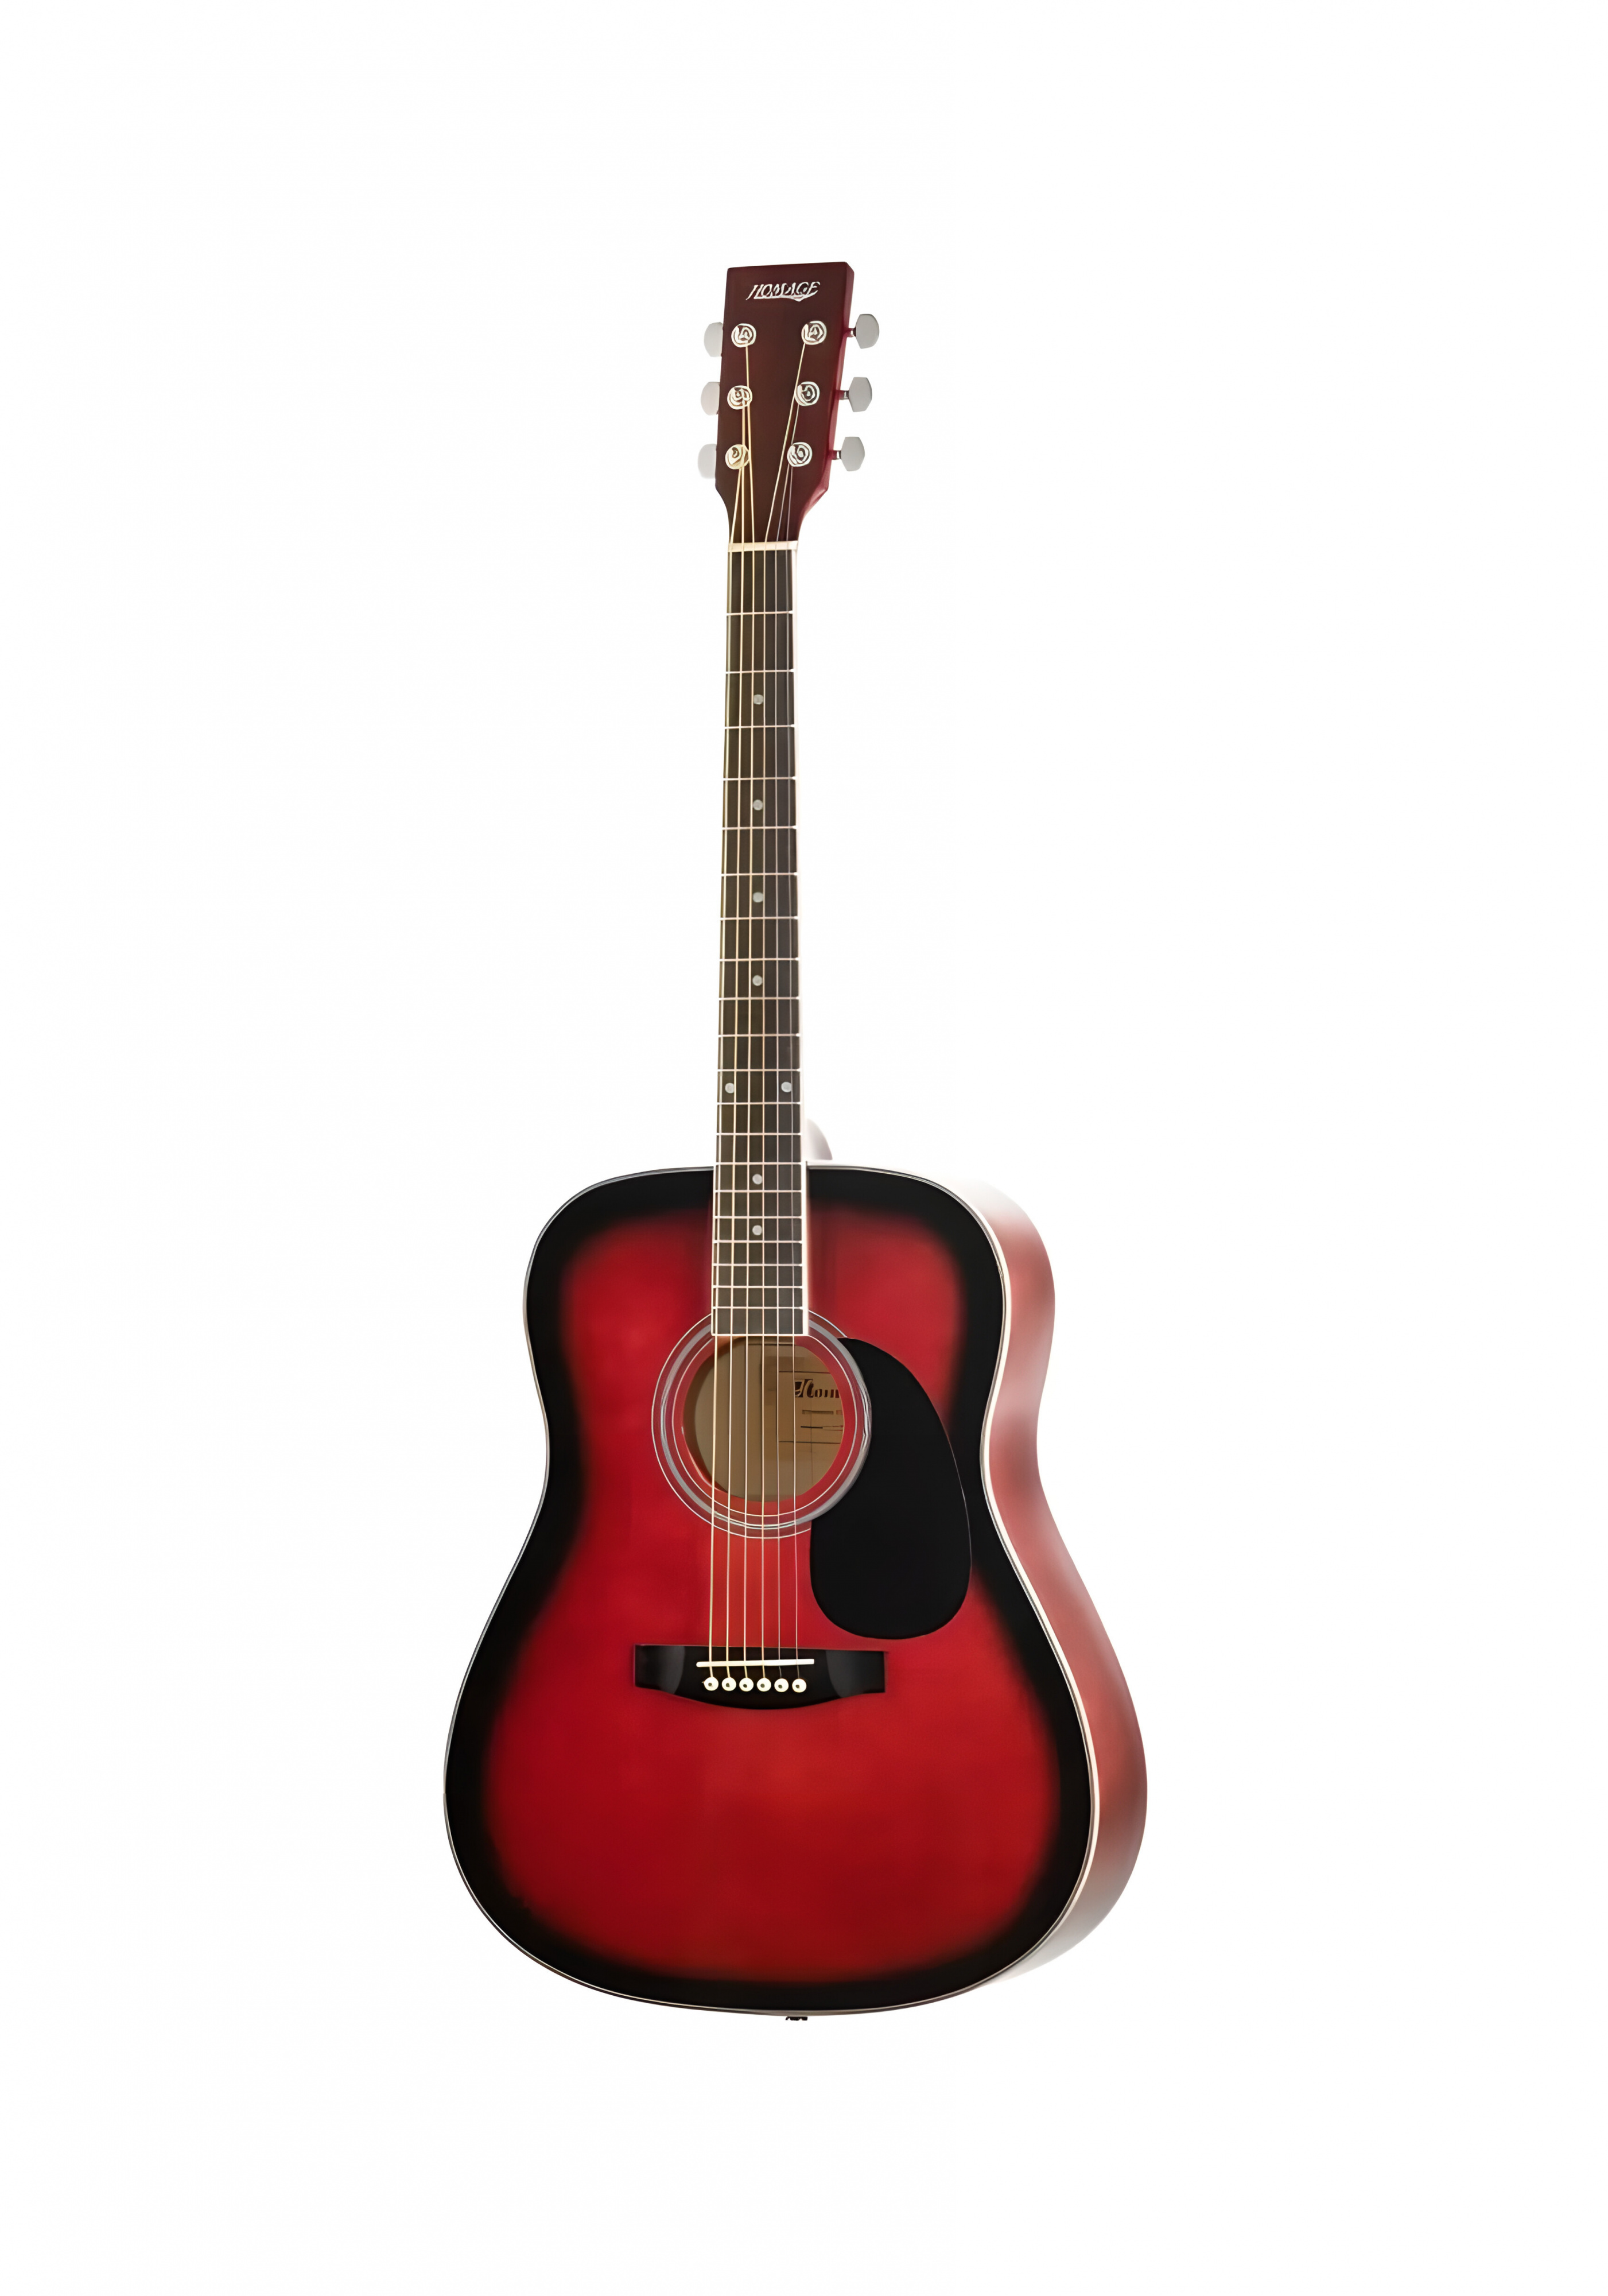 Акустические гитары Homage LF-4111-R акустические гитары mirra wg 4111 bk